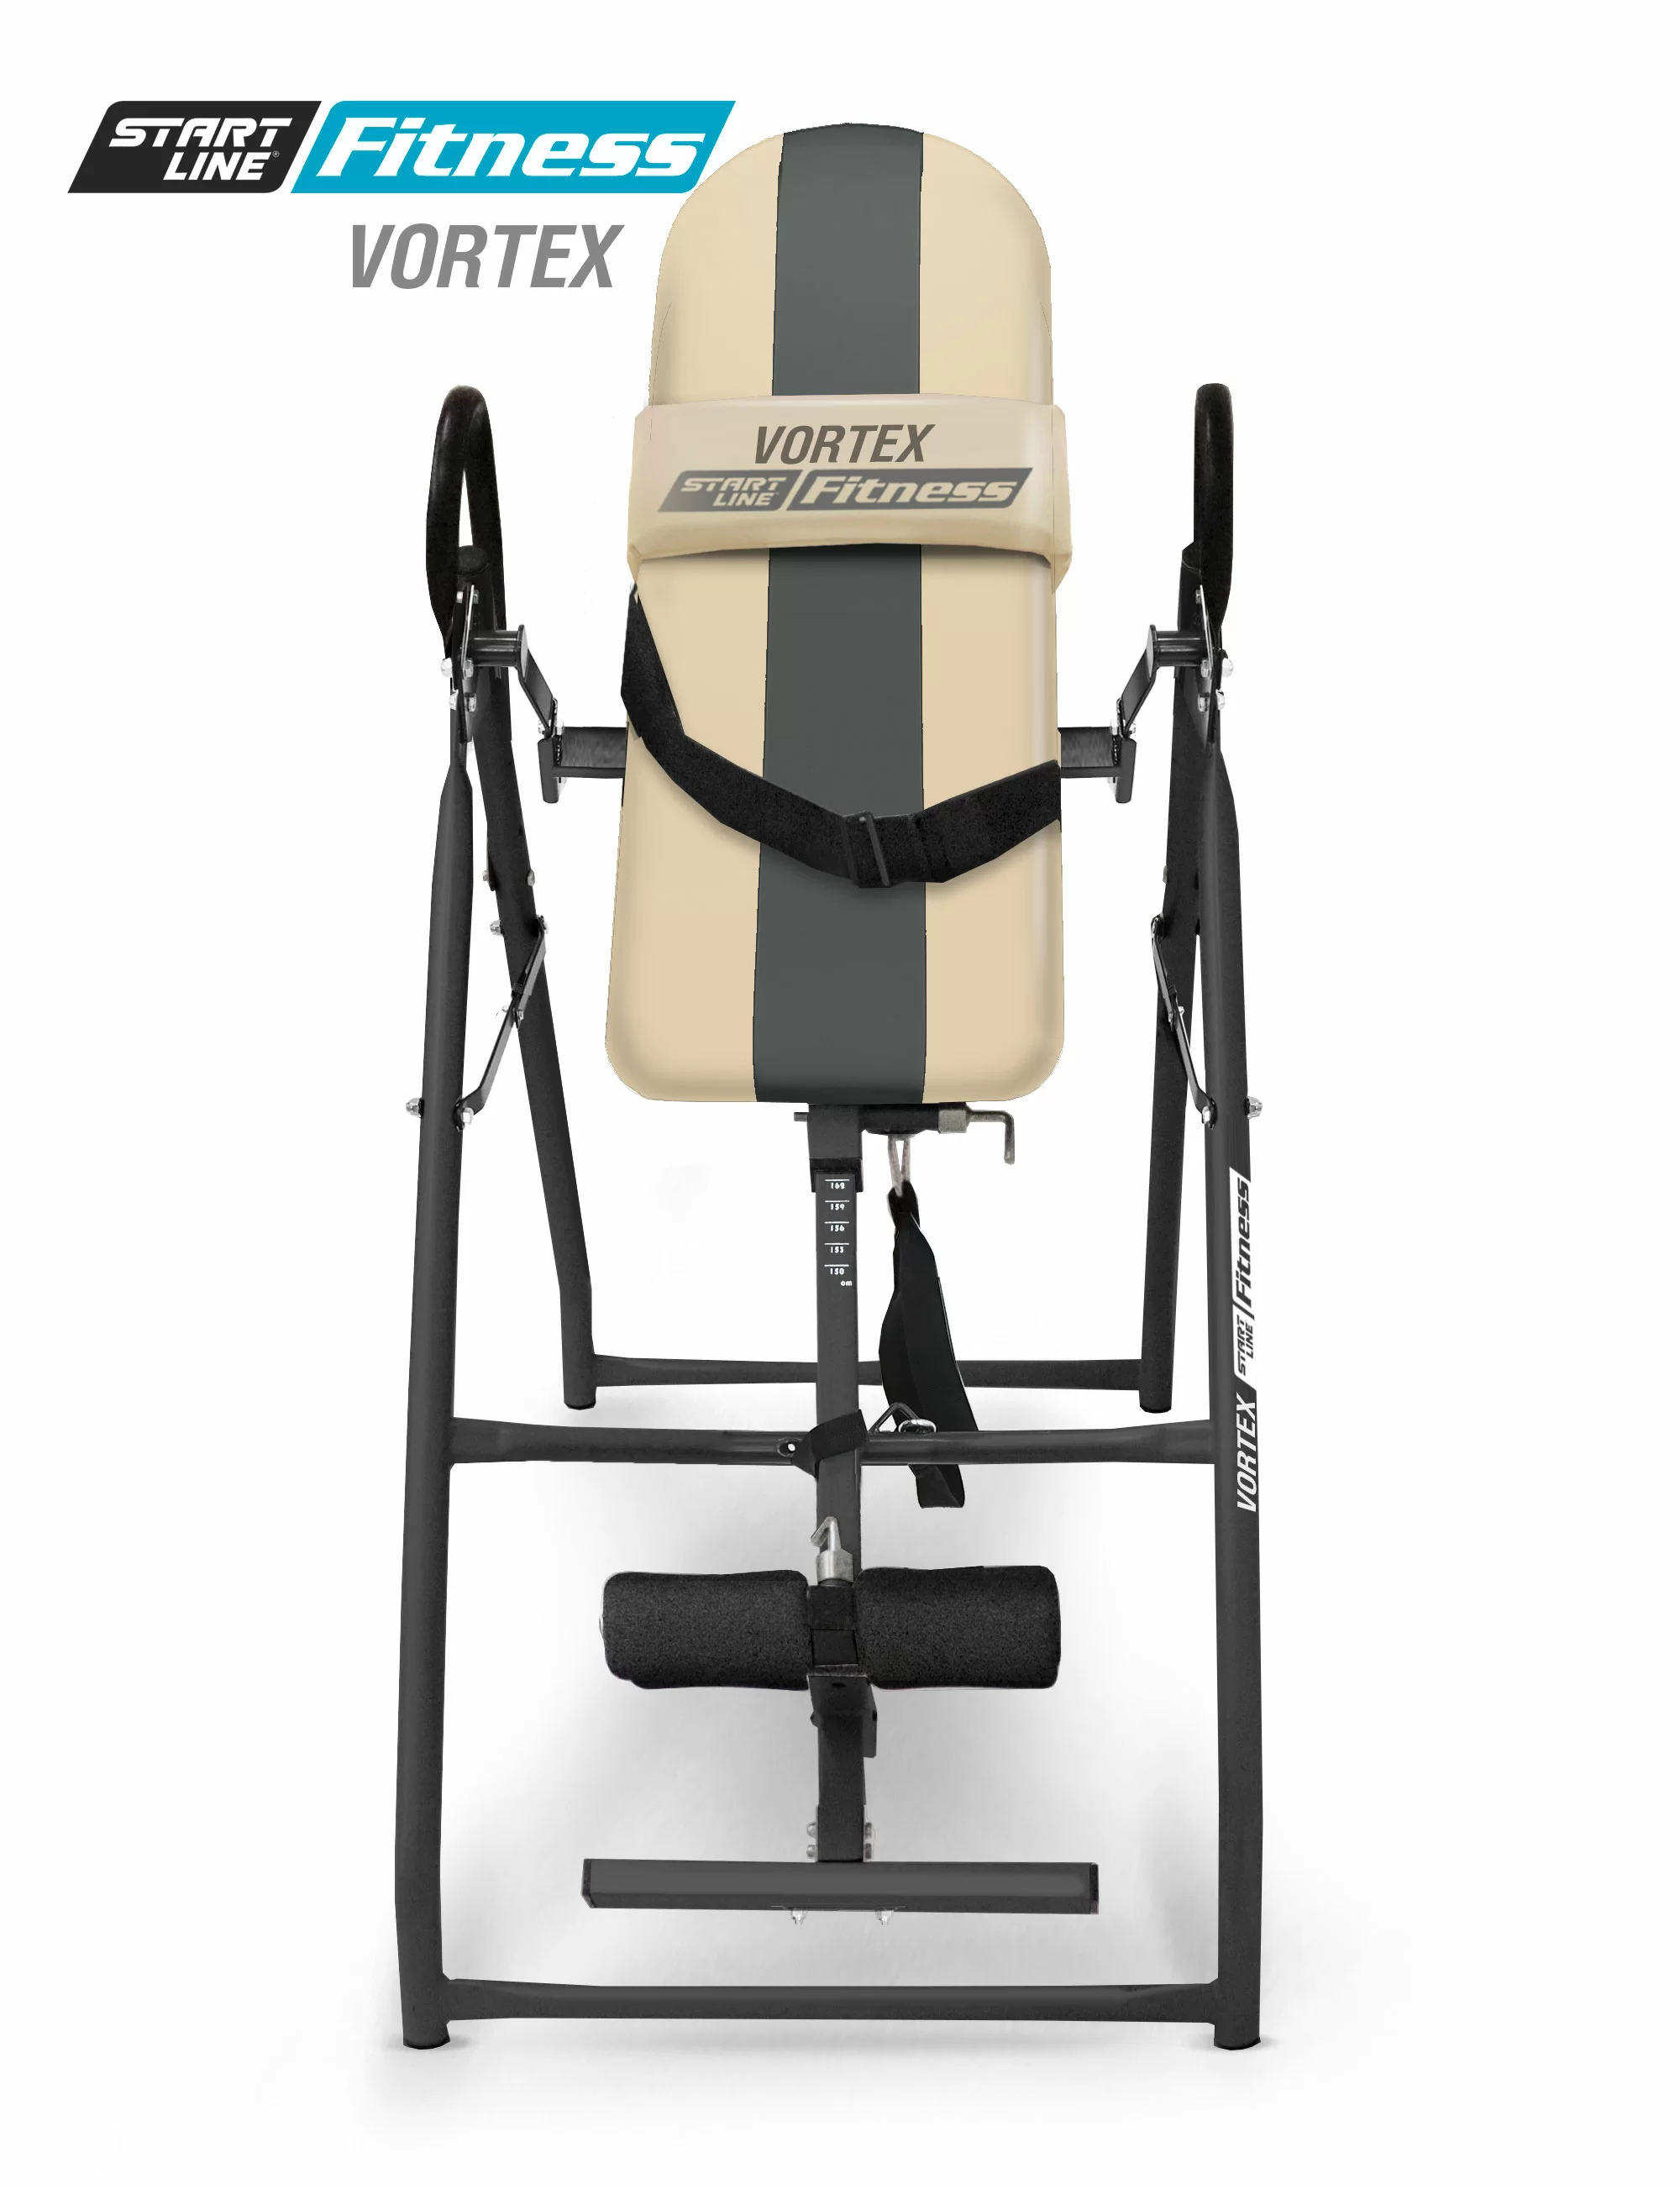 Реальное фото Инверсионный стол Vortex бежево-серый c подушкой SLFIT03-BS от магазина СпортСЕ